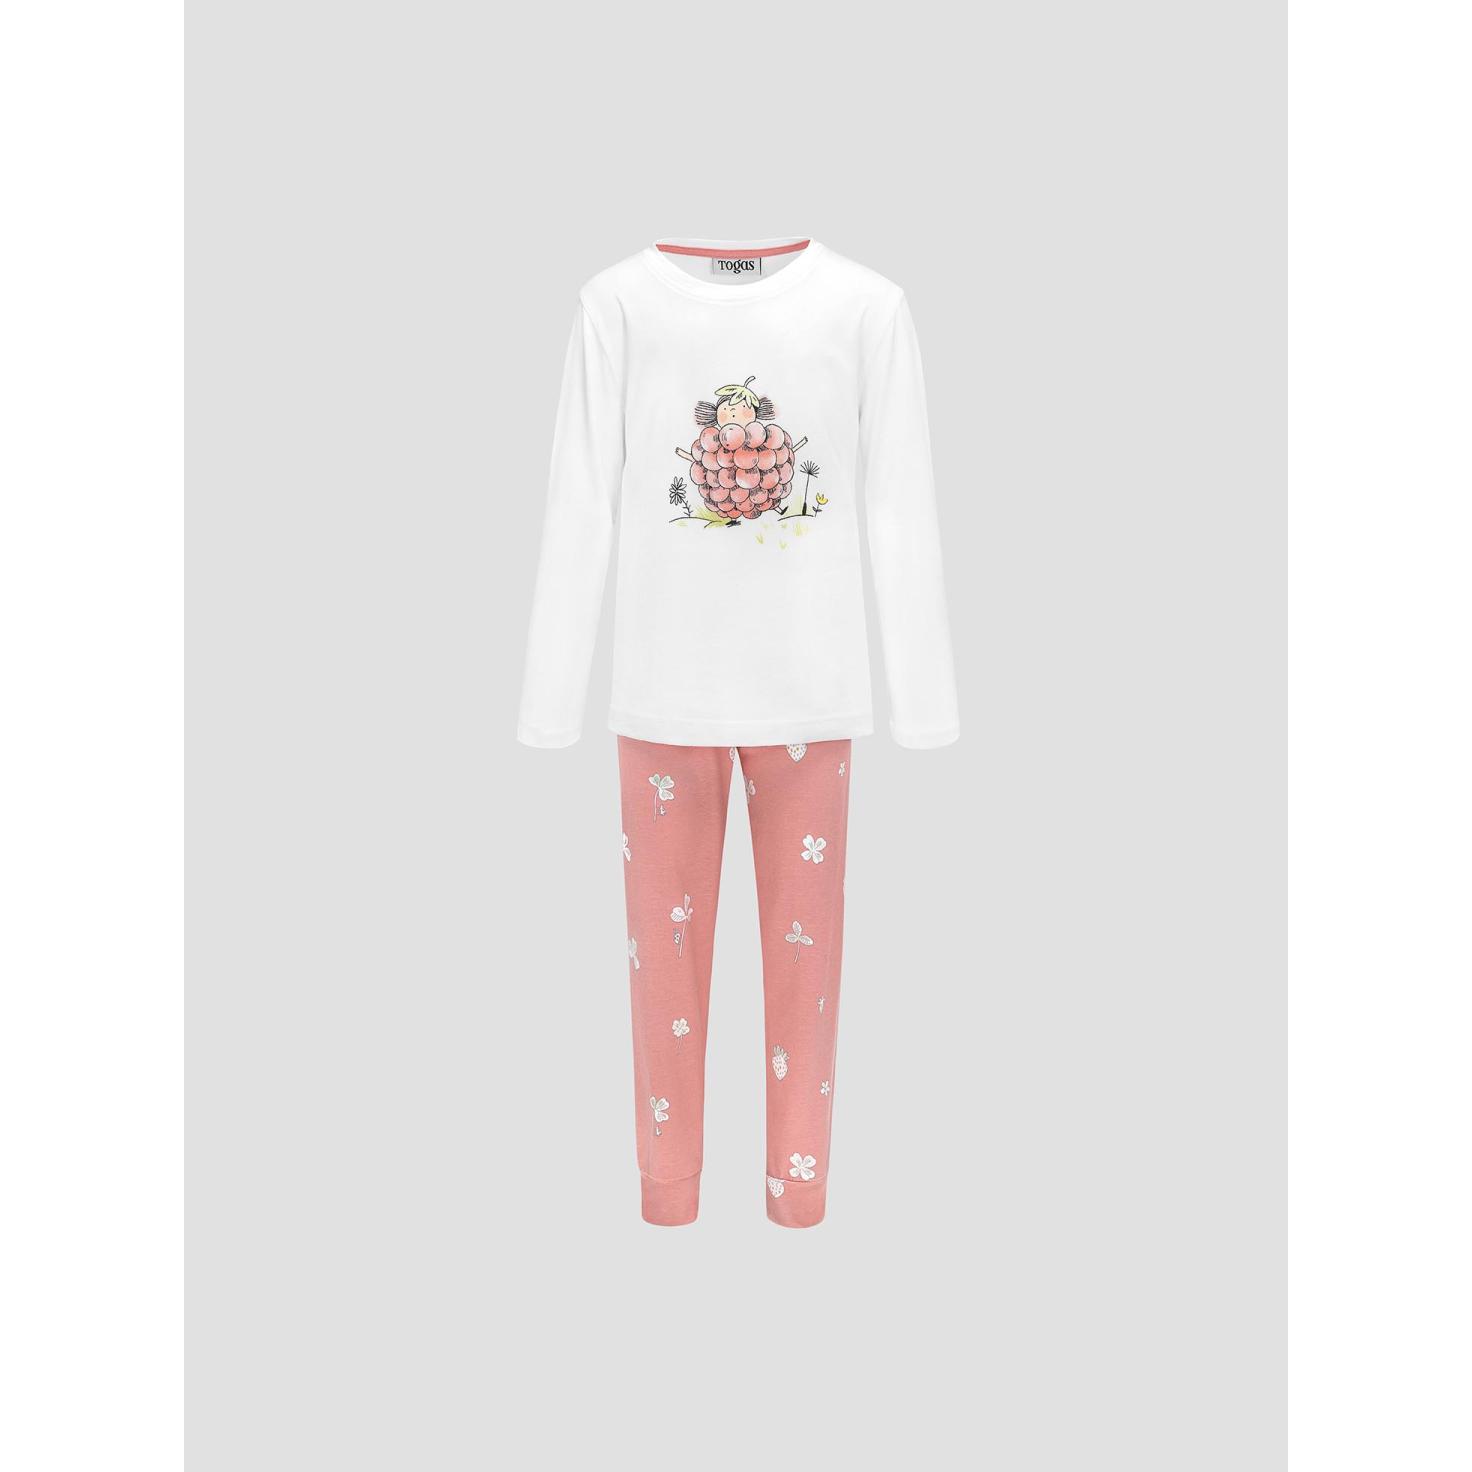 Пижама для девочек Kids by togas Стробби бело-розовый 92-98 см жен пижама с шортами инь янь белый р 46